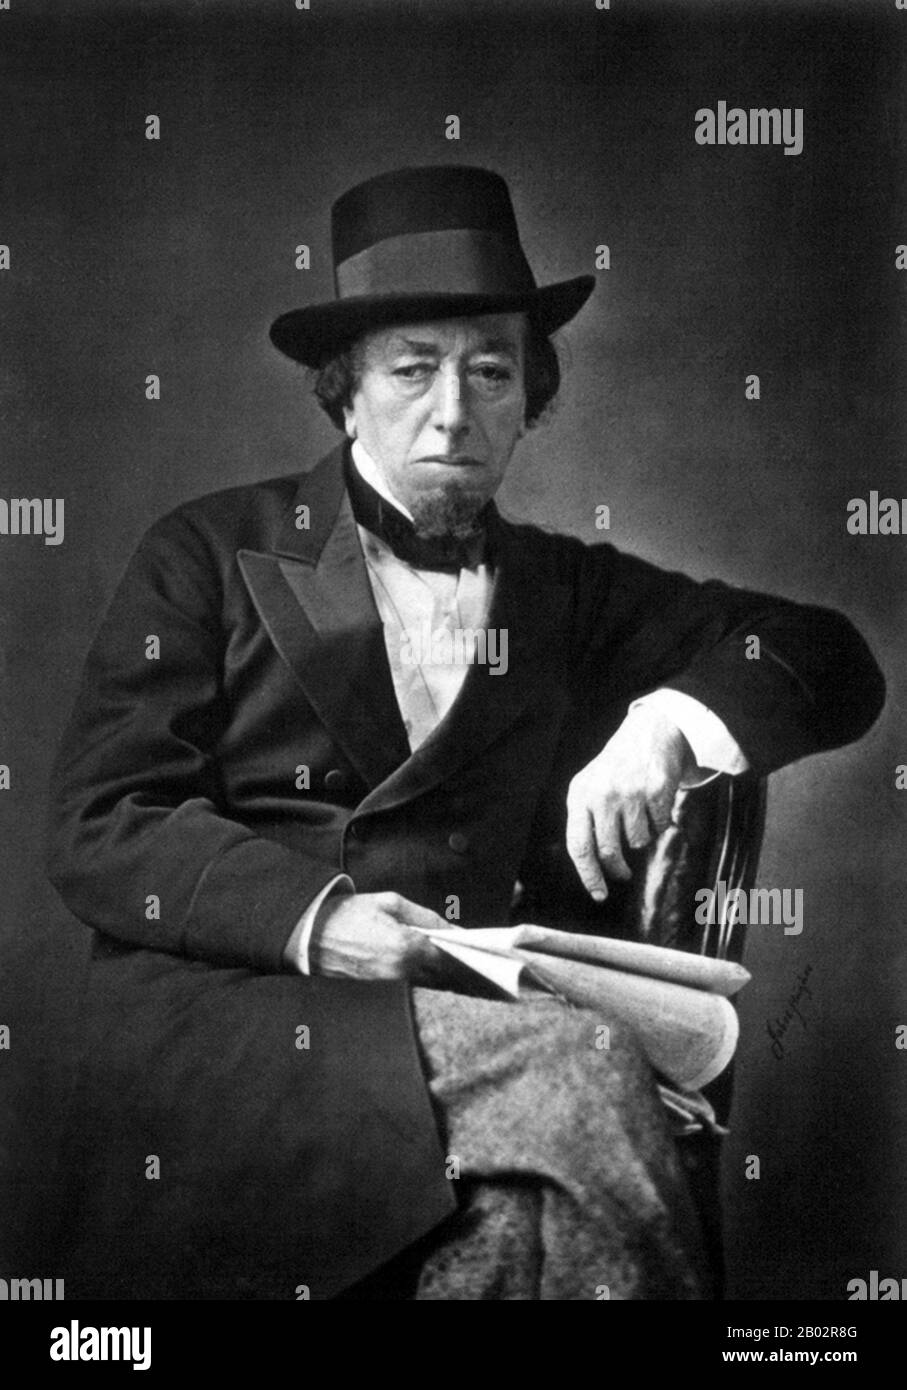 Benjamin Disraeli, premier comte de Beaconsfield, KG, PC, FRS, (21 décembre 1804 – 19 avril 1881) était un politicien, écrivain et aristocrate conservateur britannique qui a été deux fois premier ministre. Il a joué un rôle central dans la création du Parti conservateur moderne, définissant ses politiques et sa vaste portée. Disraeli se souvient de sa voix influente dans les affaires mondiales, de ses batailles politiques avec le chef libéral William Ewart Gladstone et de son conservatisme d'une nation ou de sa « démocratie conservatrice ». Il a fait des conservateurs le parti le plus identifié avec la gloire et le pouvoir de l'Empir britannique Banque D'Images